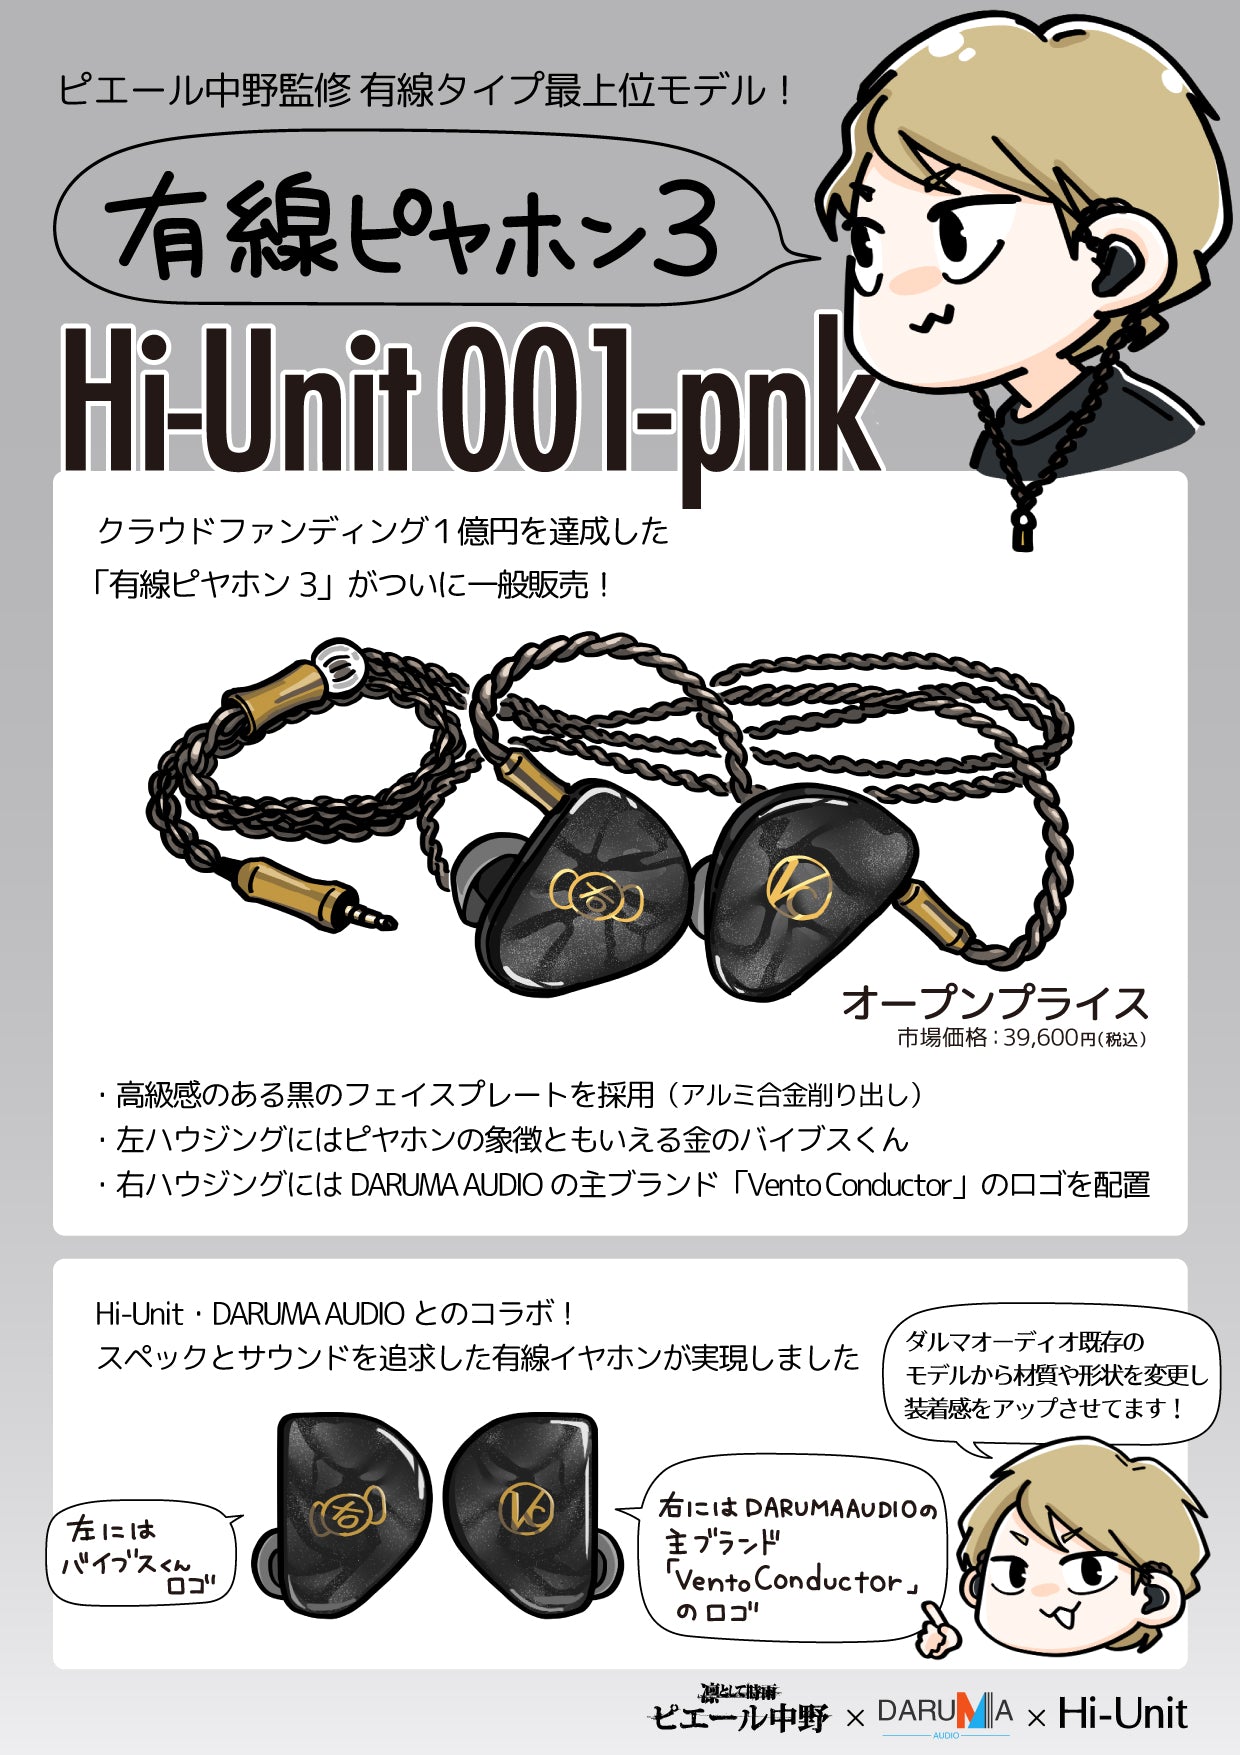 有線ピヤホン3 (Hi-Unit 001-pnk)【送料無料】 – アルペックスハイユニット